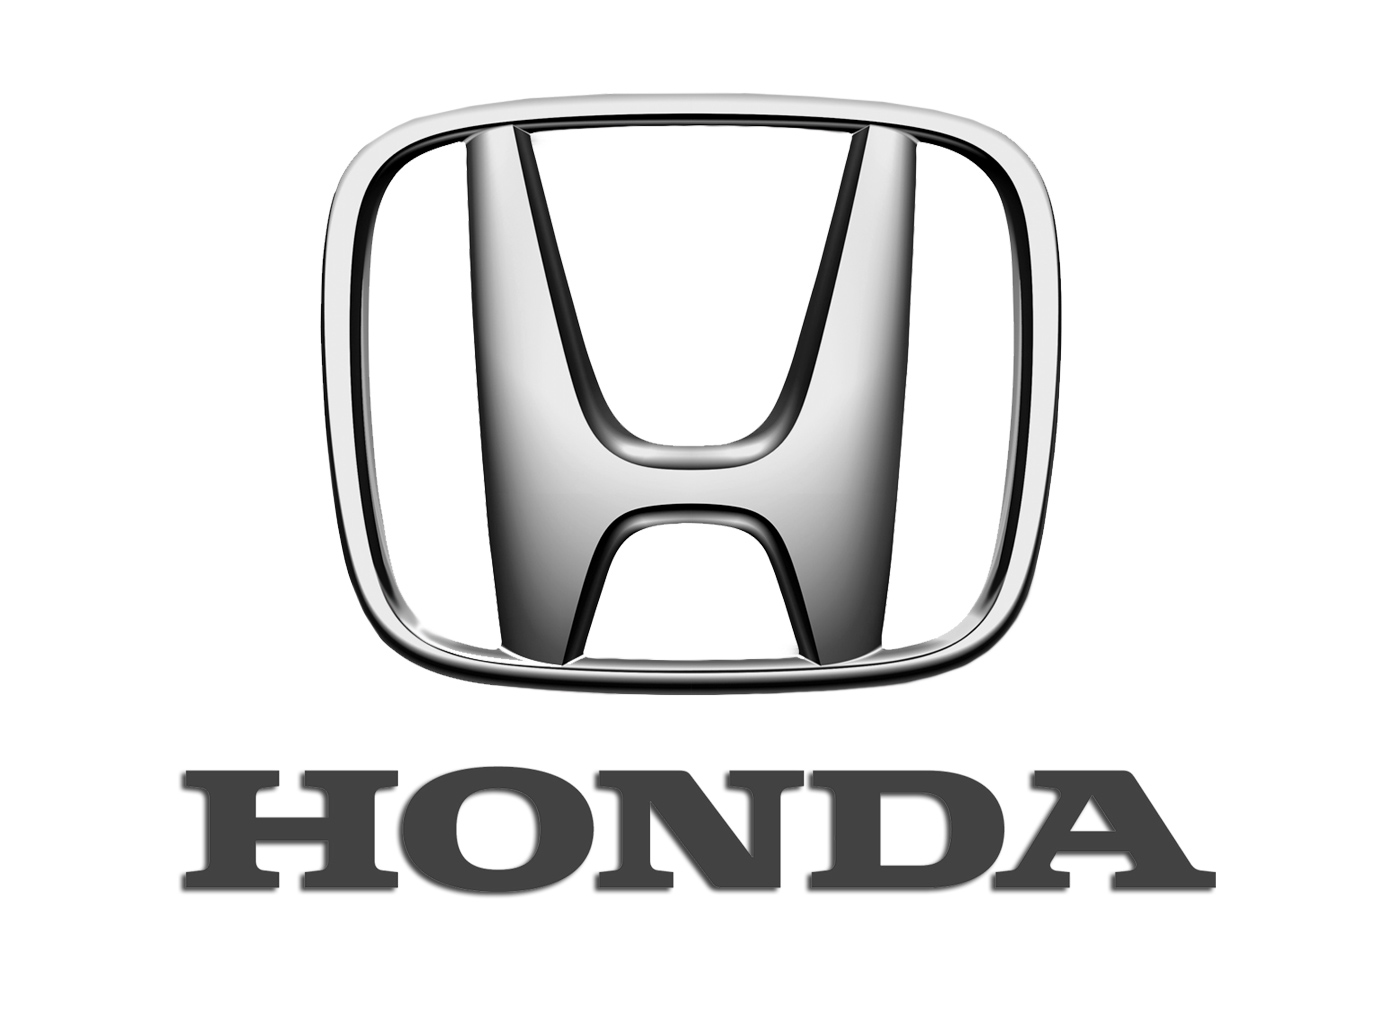 Что значит honda. Эмблема Хонда. Хонда знак машины. Honda logo автомобиль. Знак Хонда вектор.